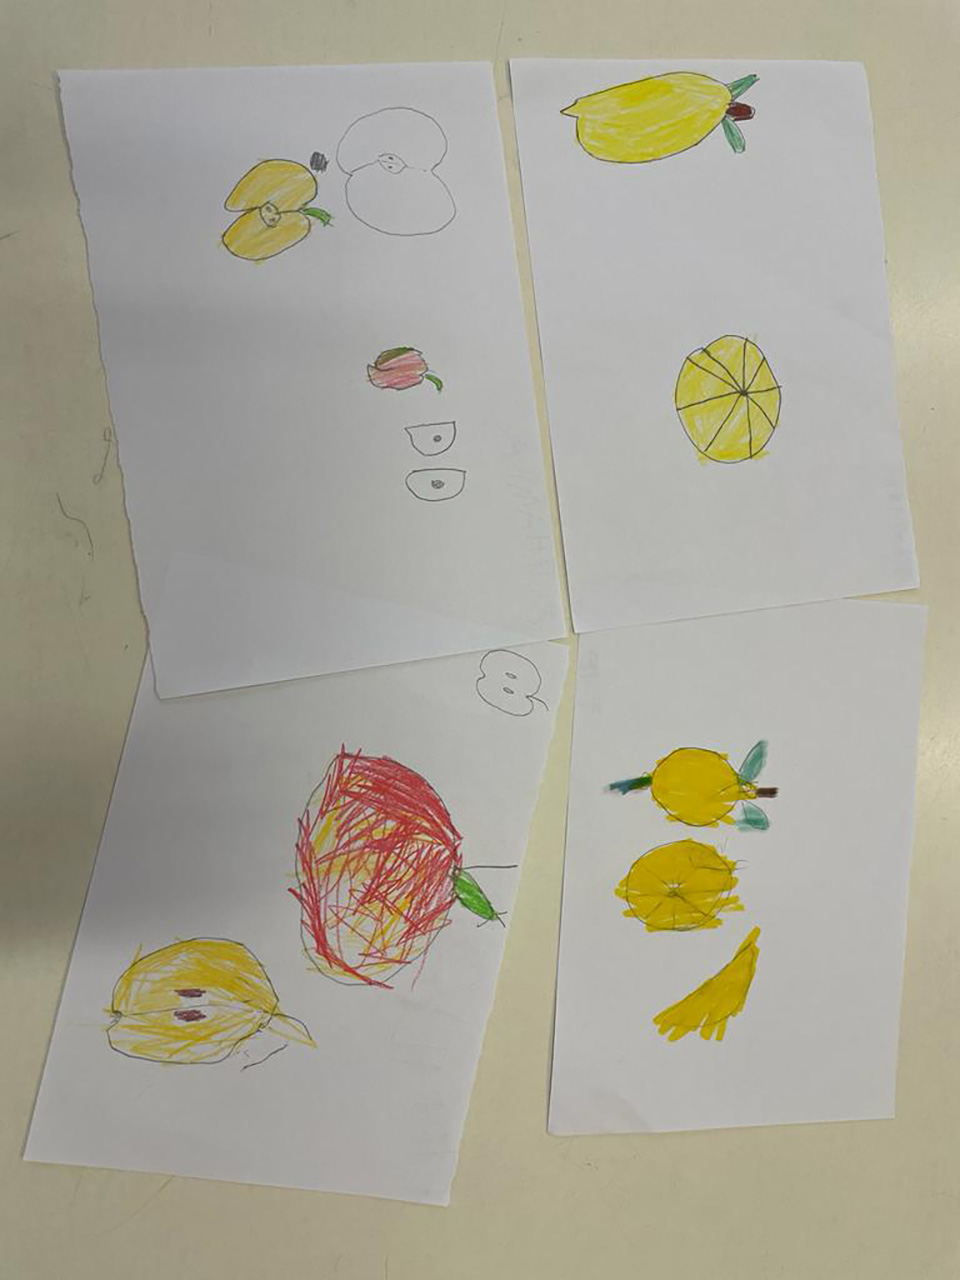 disegno creato da bambino con frutta